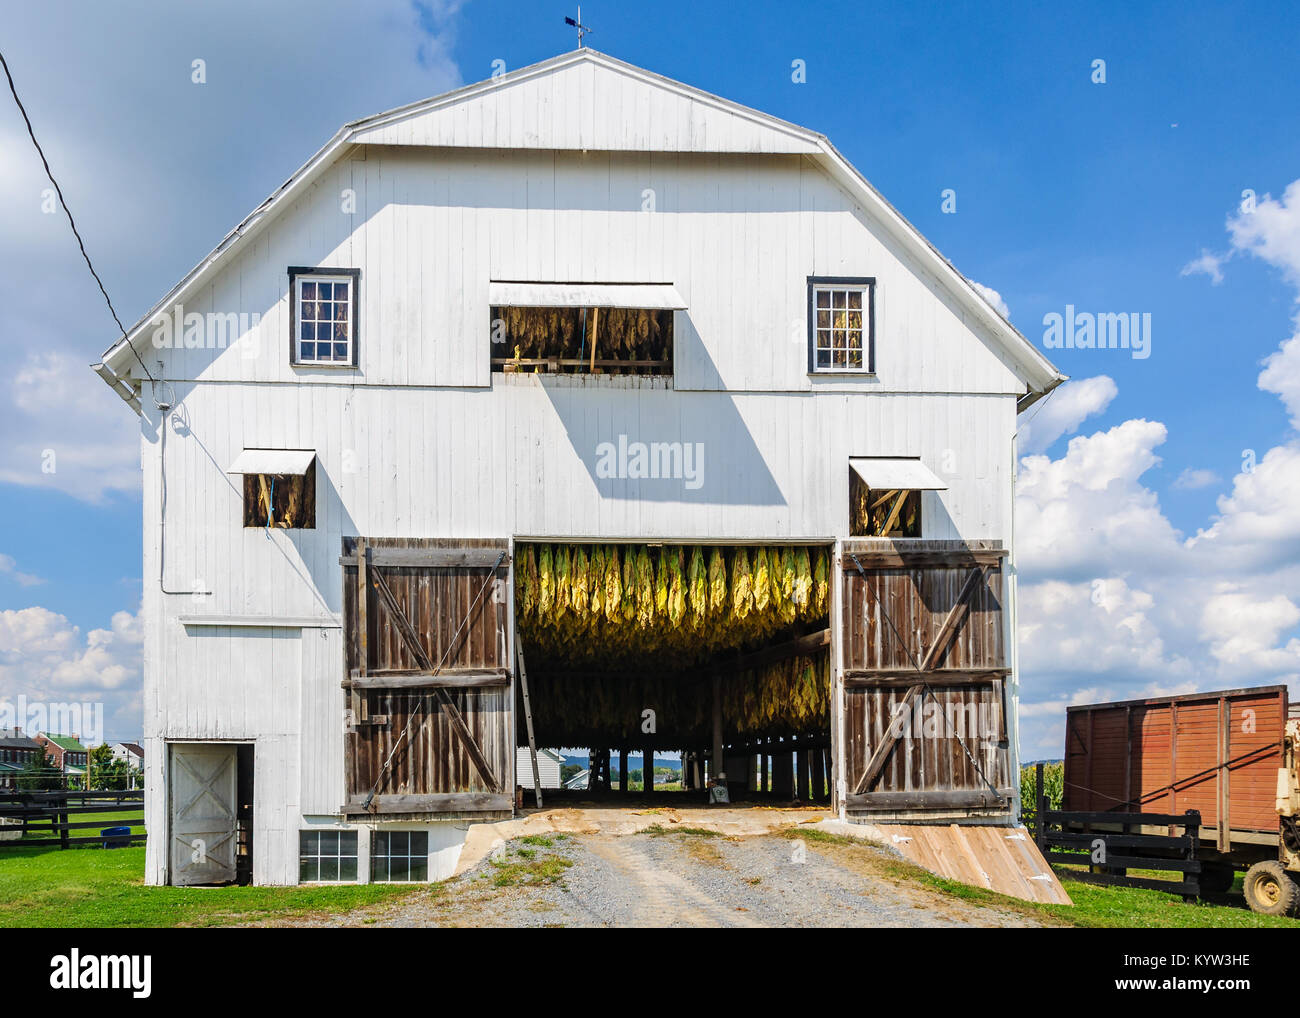 Le stockage des plants de tabac en pays Amish en Pennsylvanie, USA Banque D'Images